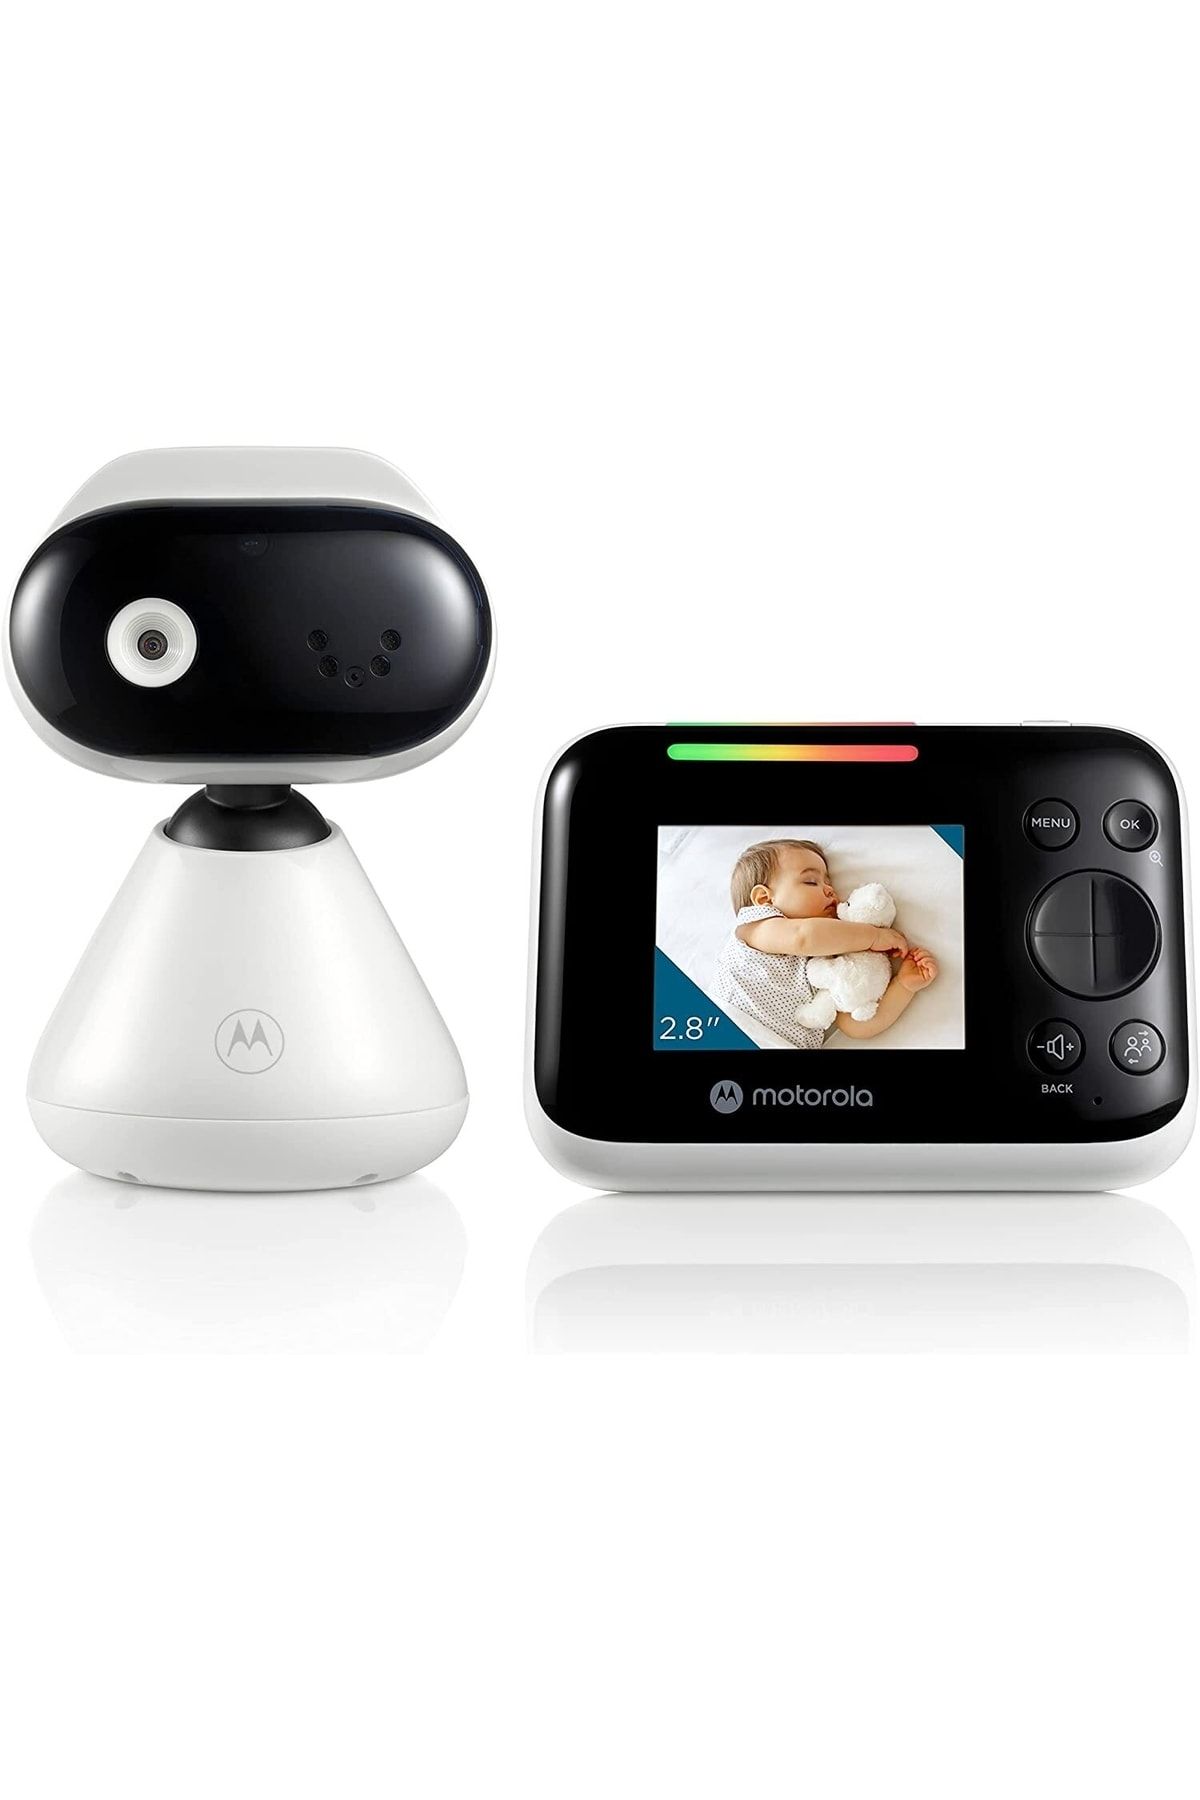 Motorola Nursery Pıp1200 Kameralı Ve Ebeveyn Üniteli Bebek Monitörü 2,8